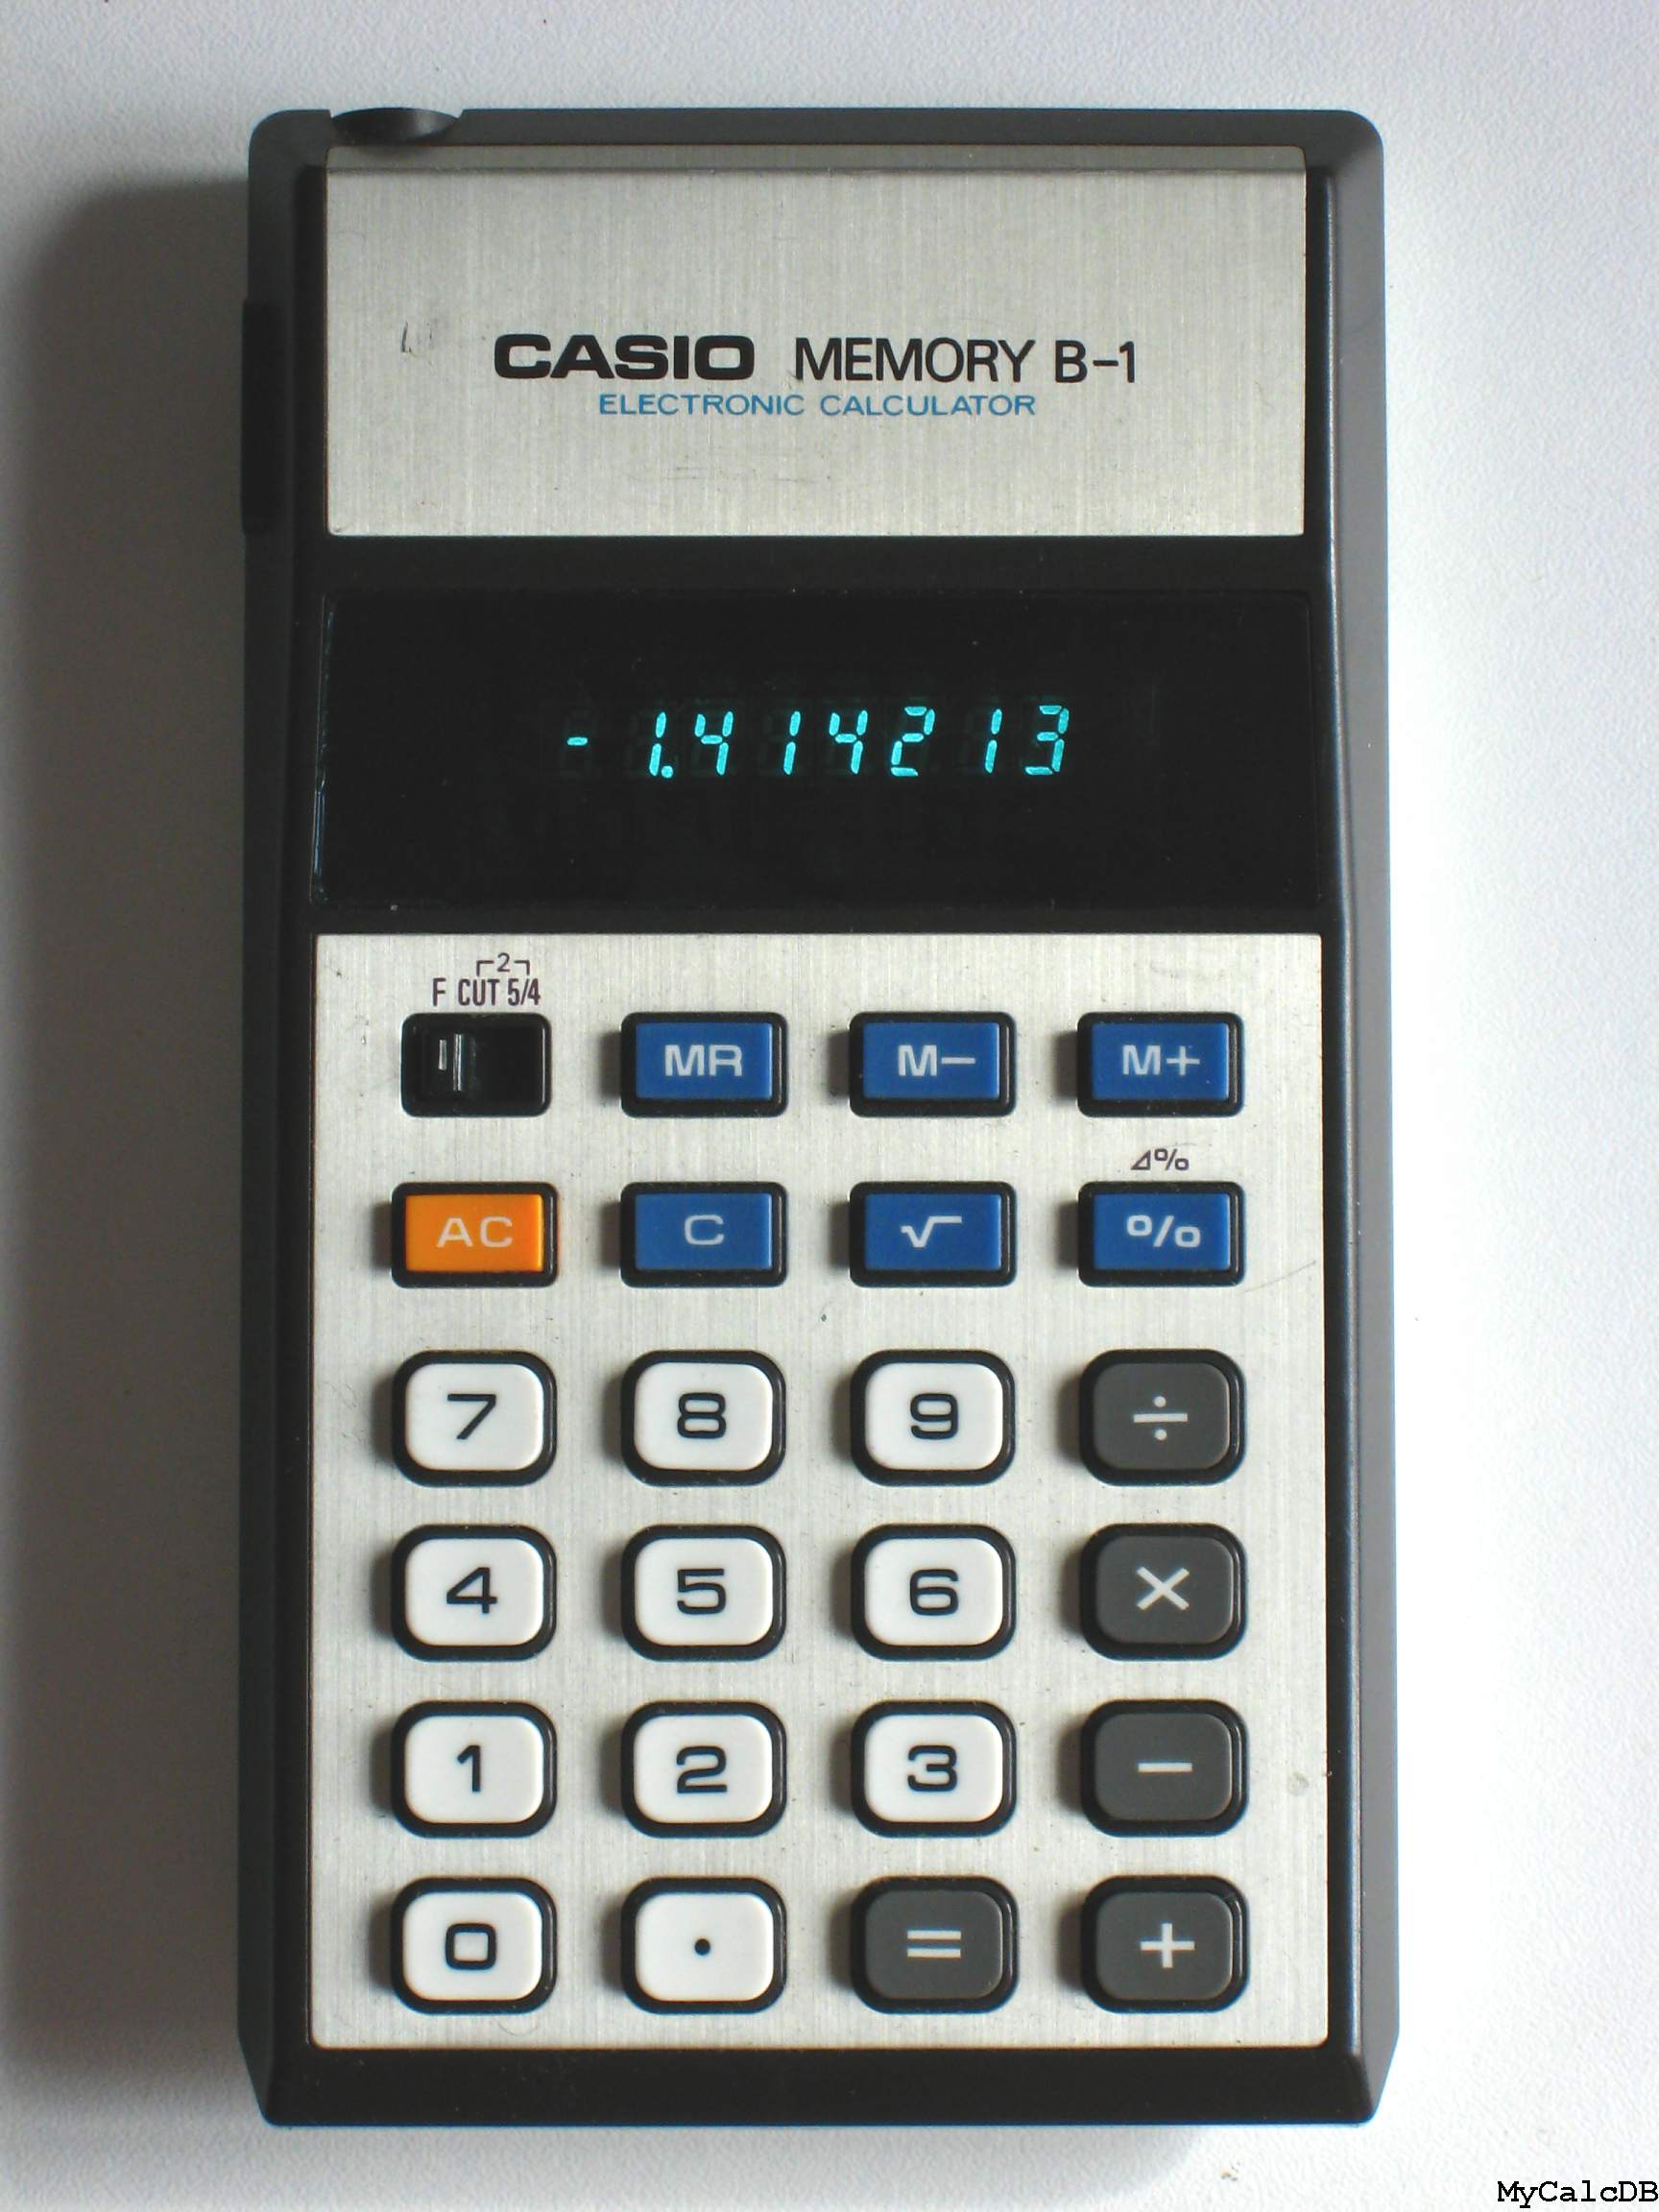 Casio MEMORY B-1